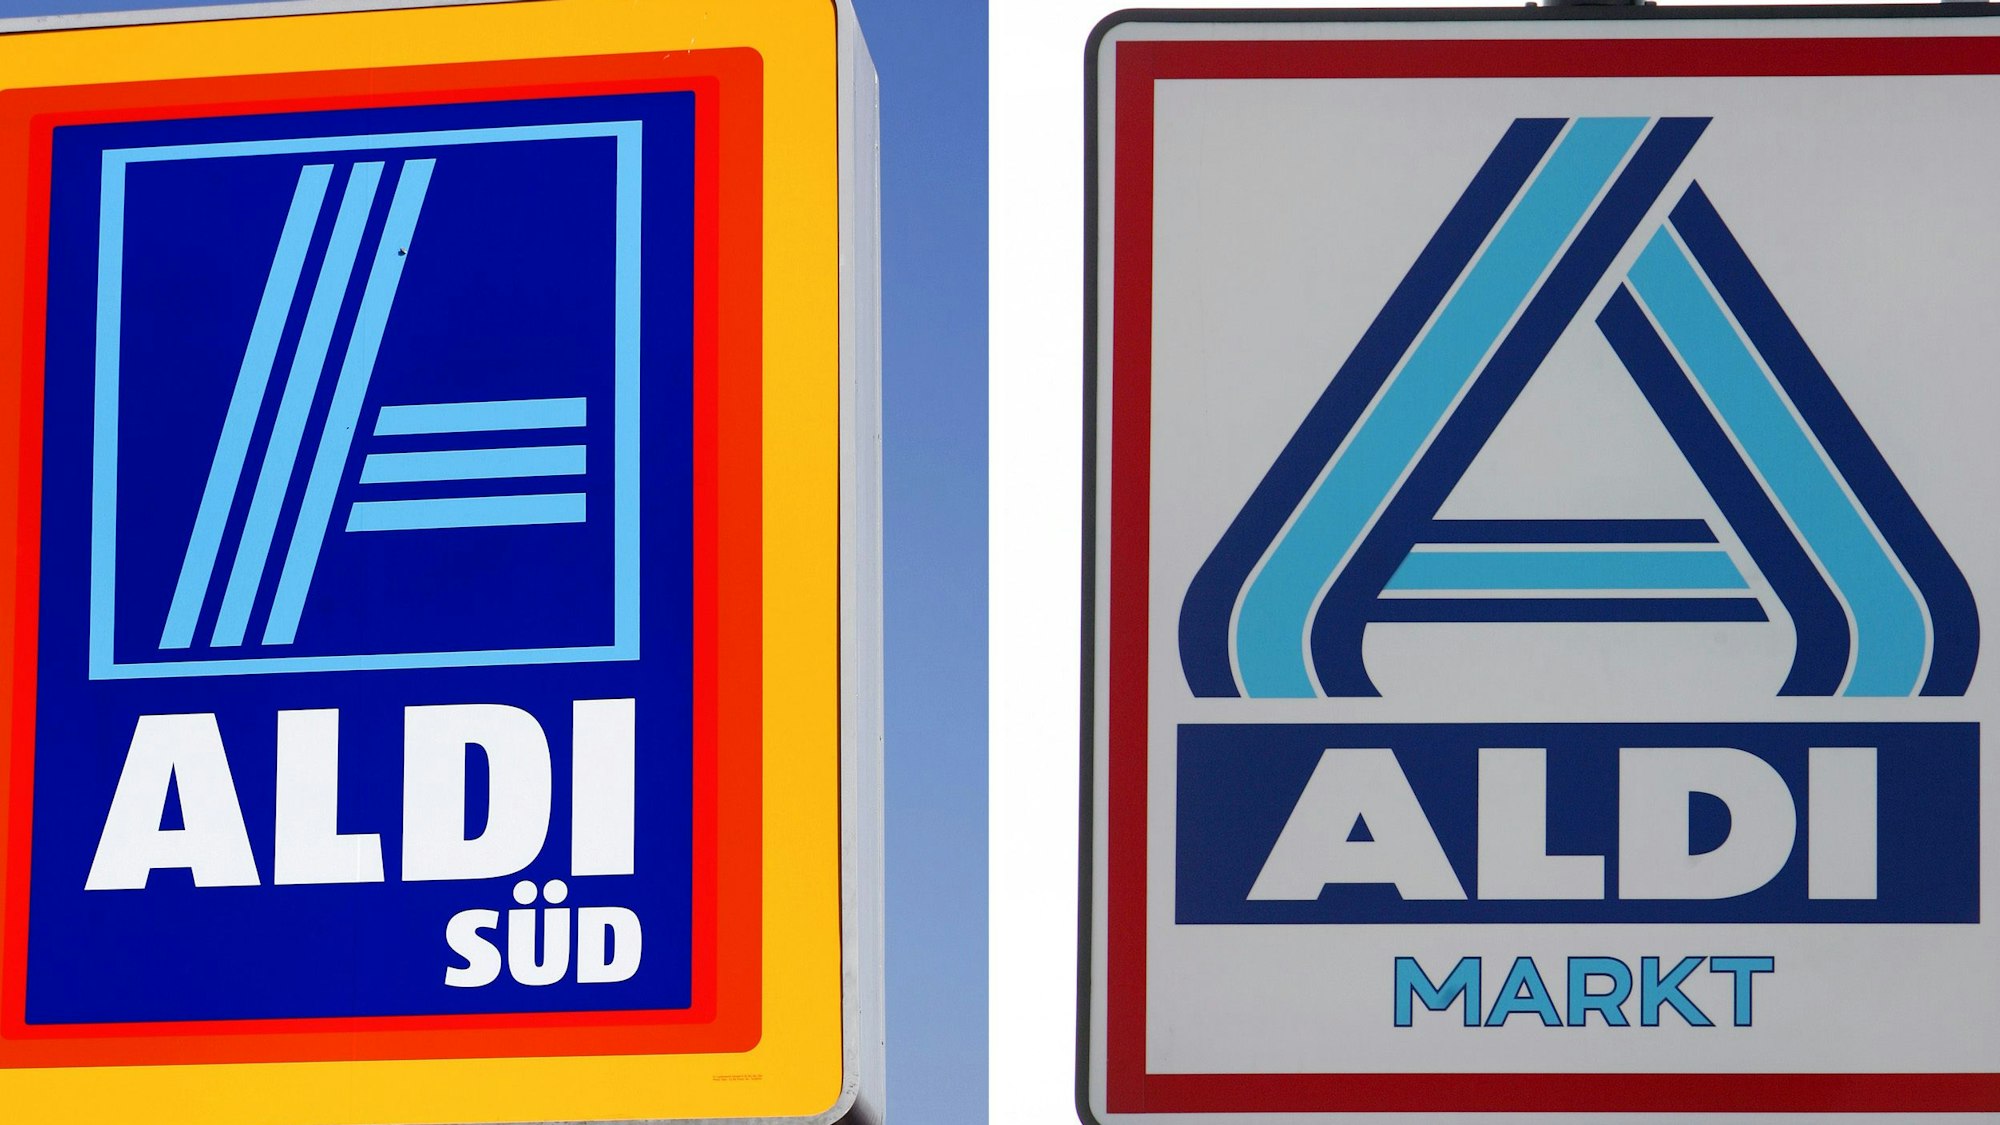 Die Logos von Aldi Süd und Aldi Nord